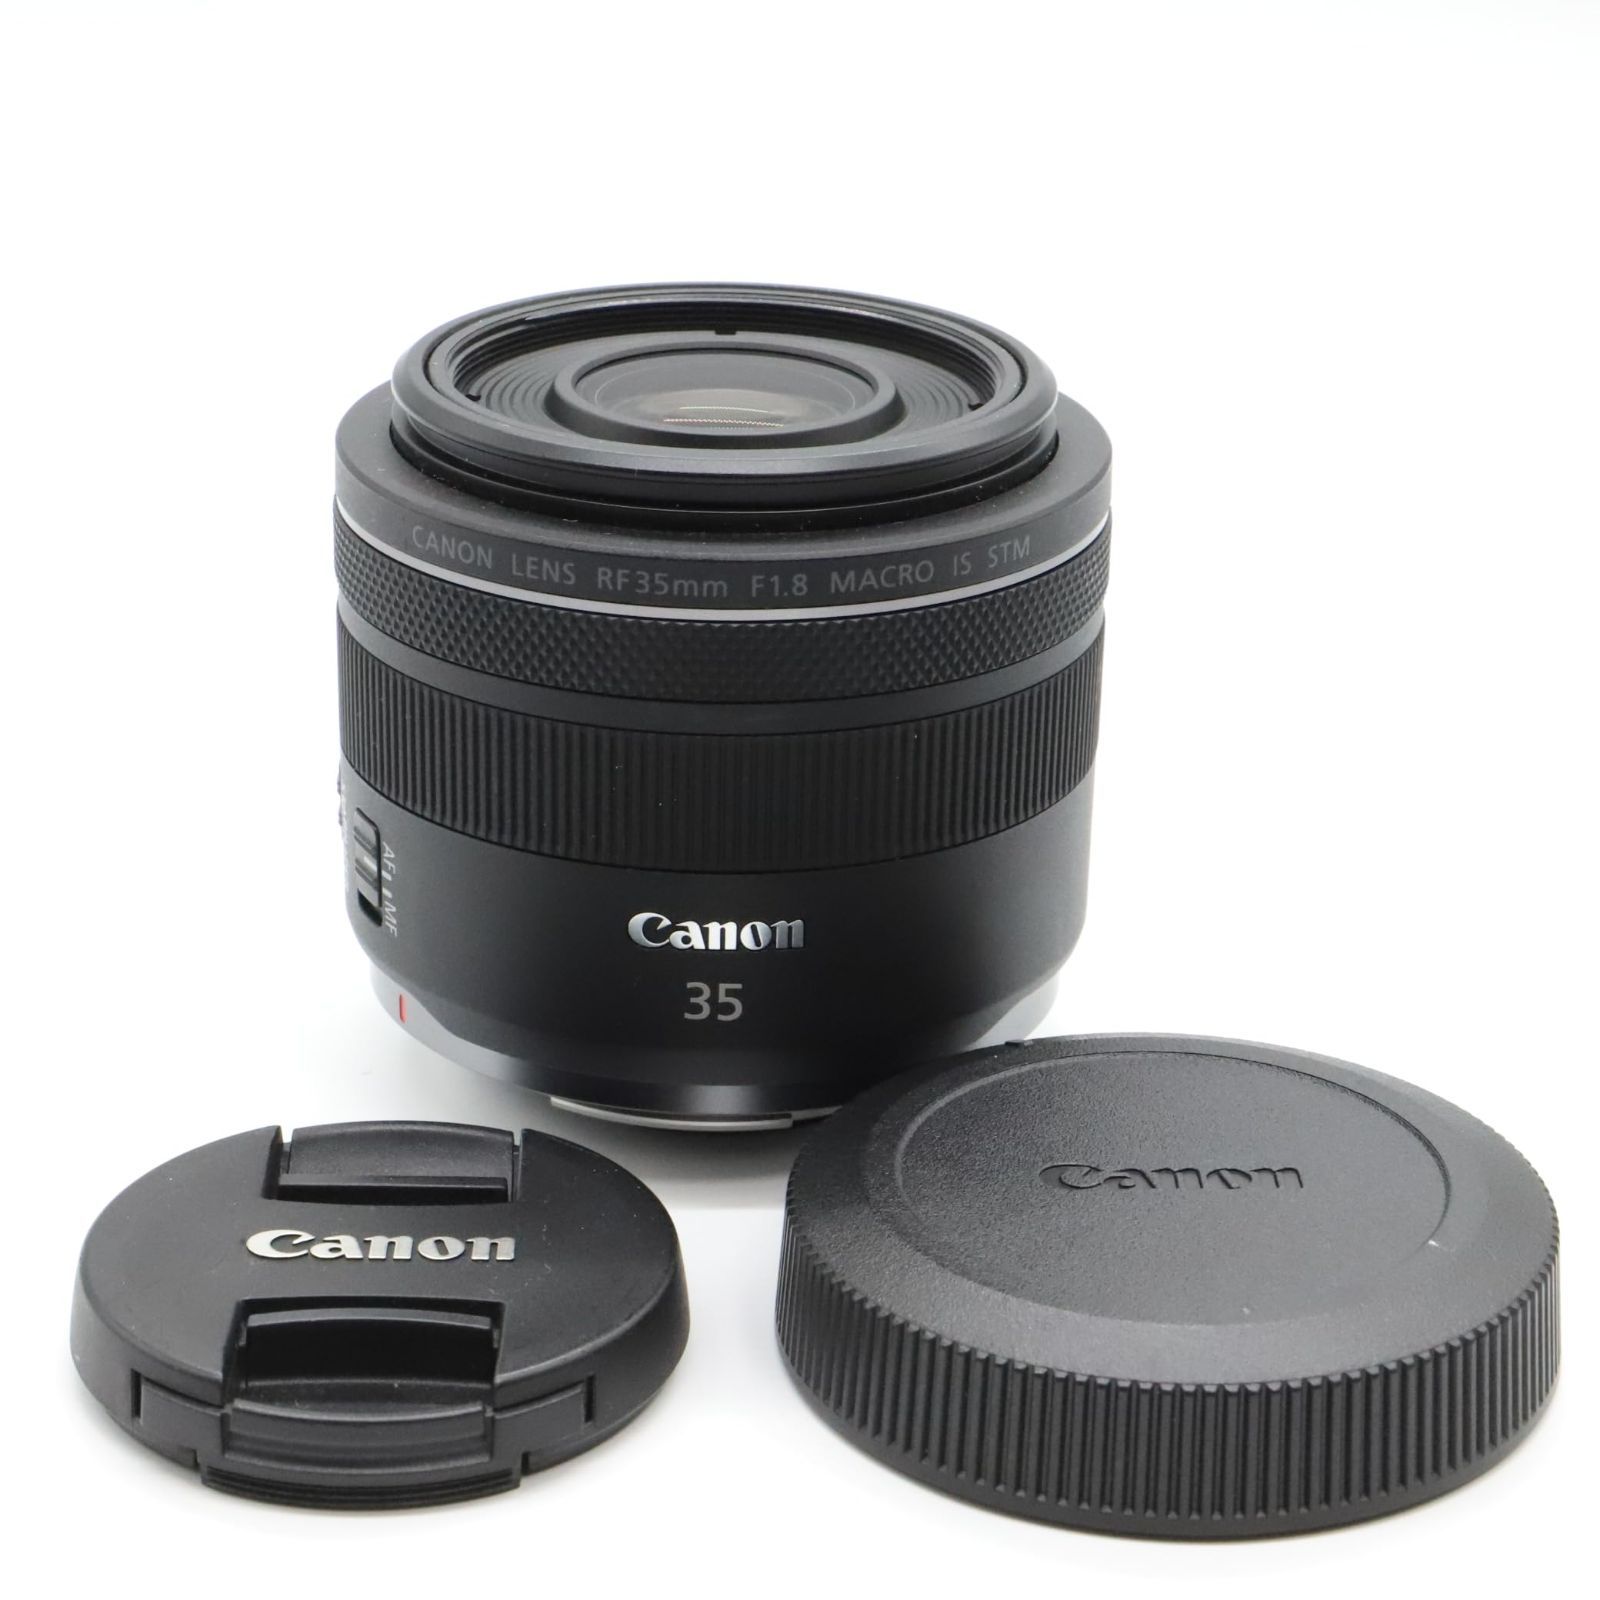 Canon 単焦点広角レンズ RF35mm F1.8 マクロ IS STM EOSR対応